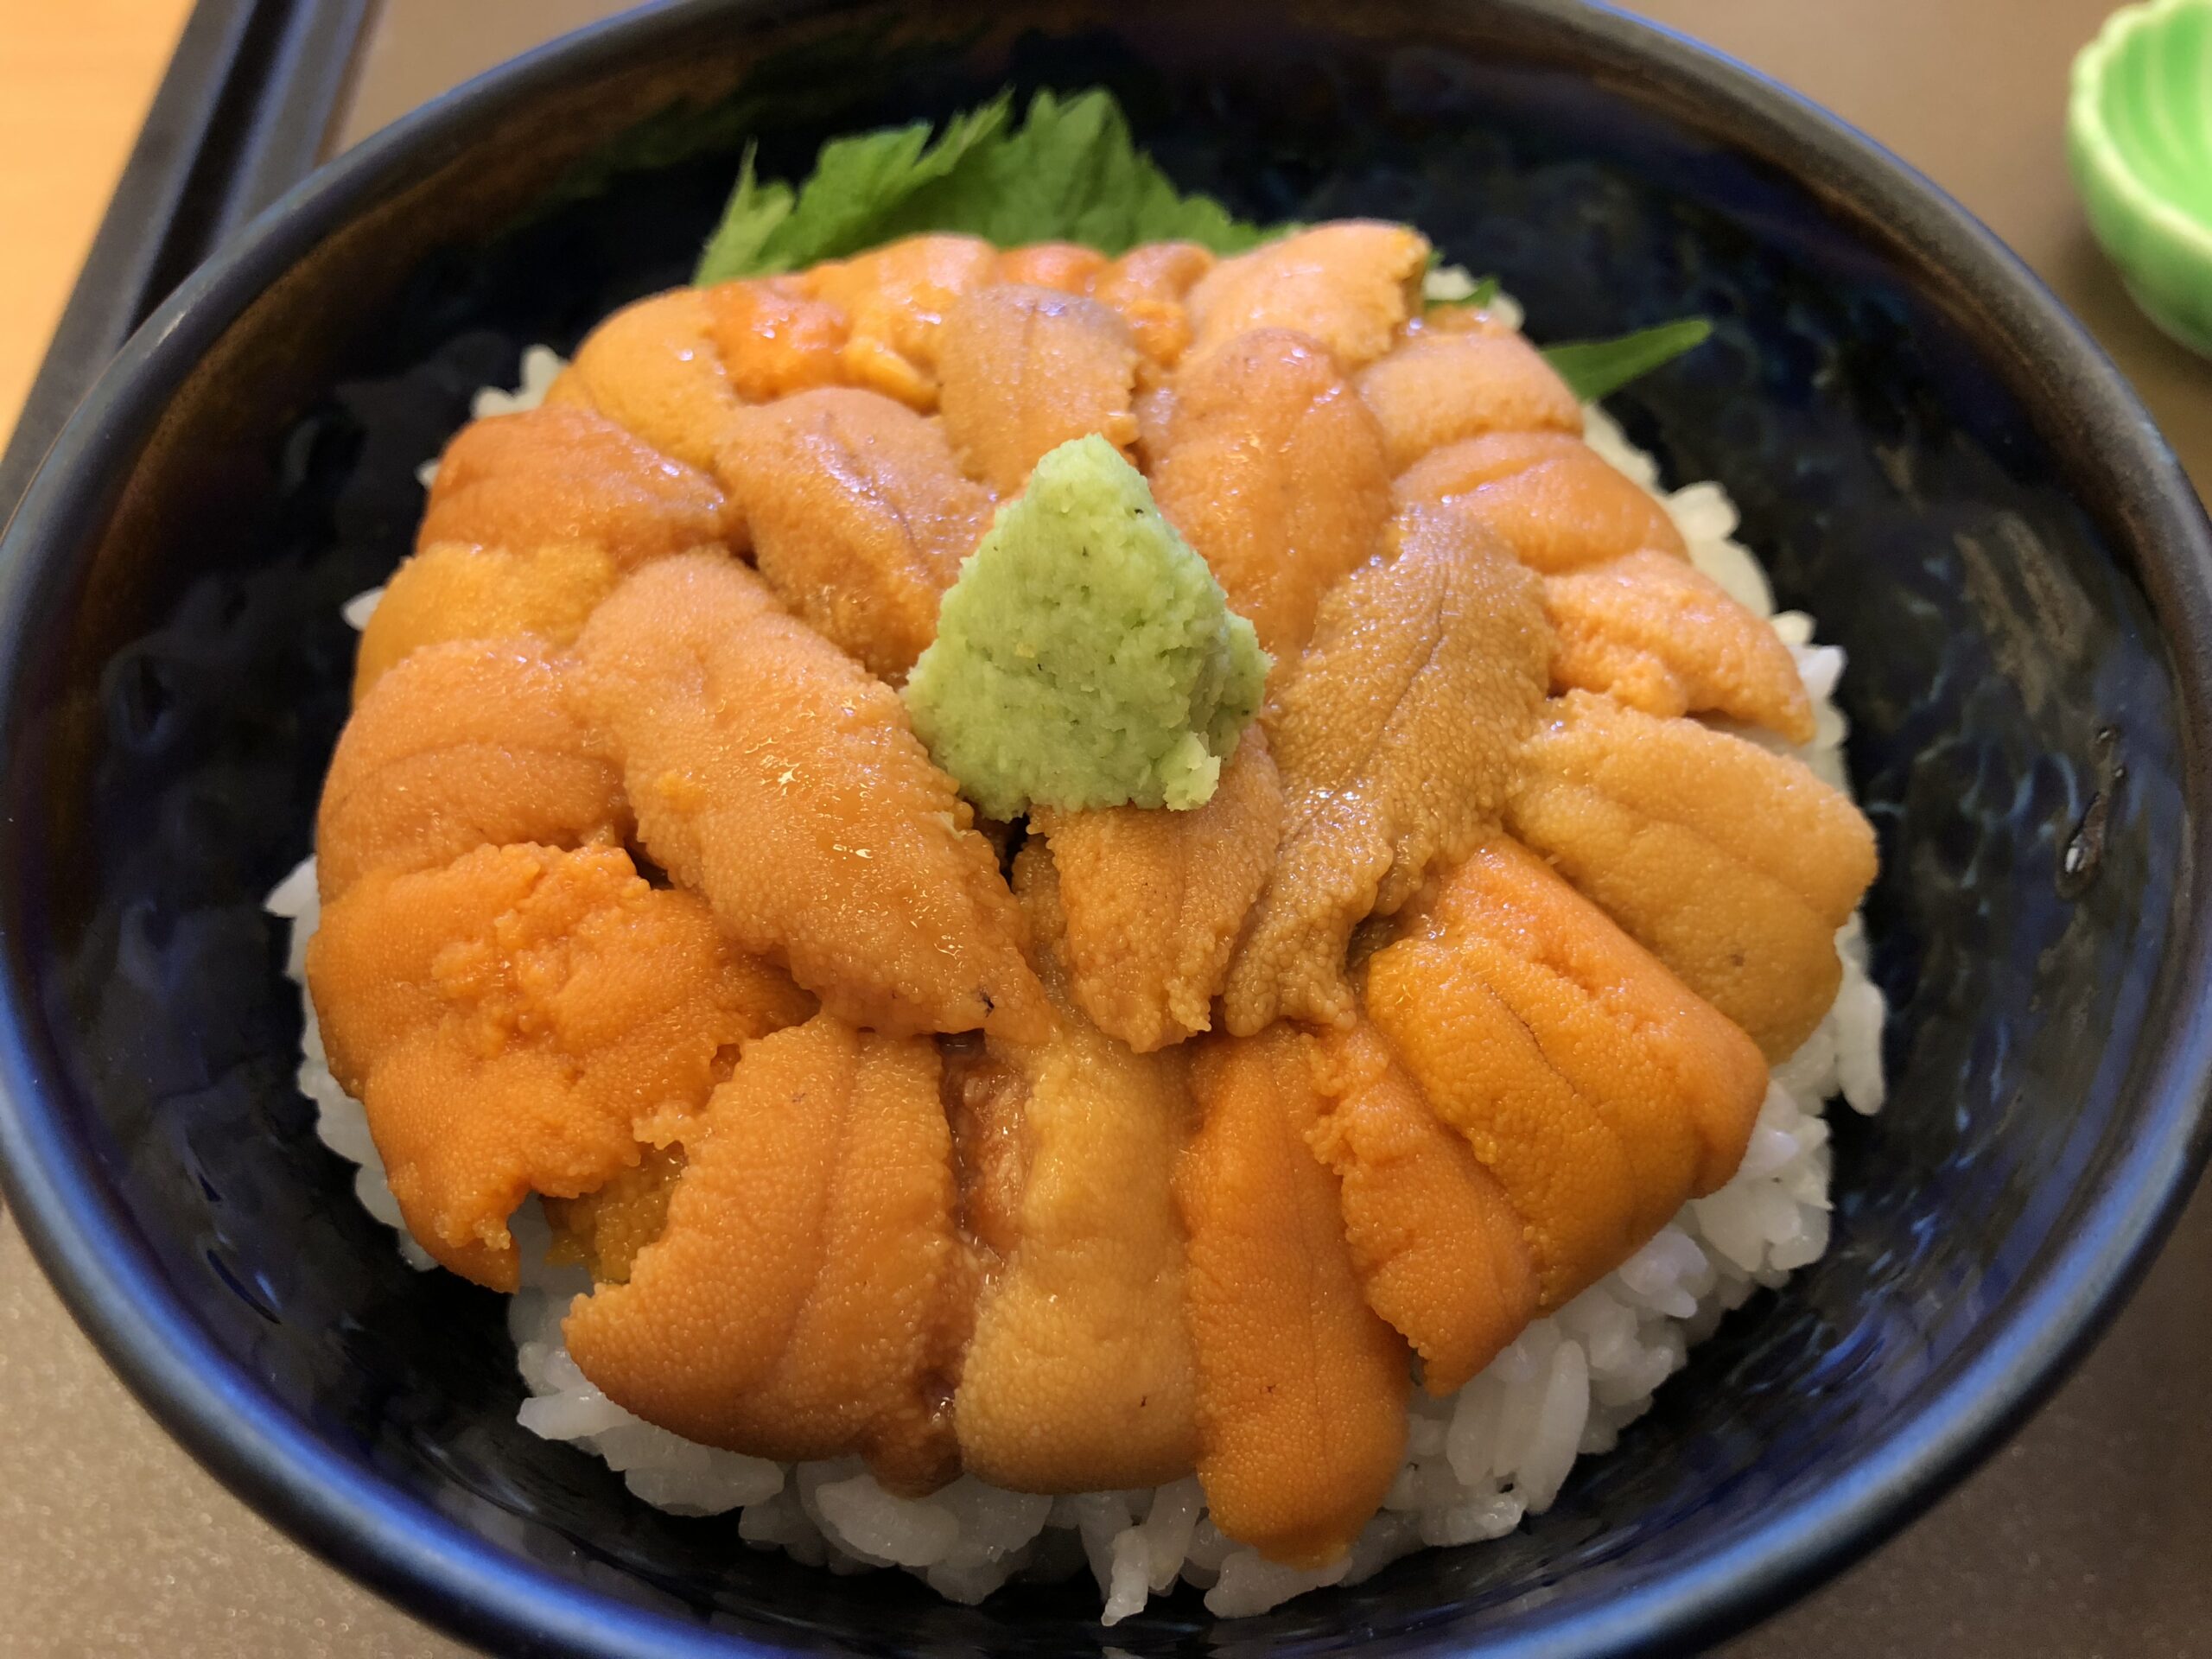 uni don (sea urchin rice bowl)